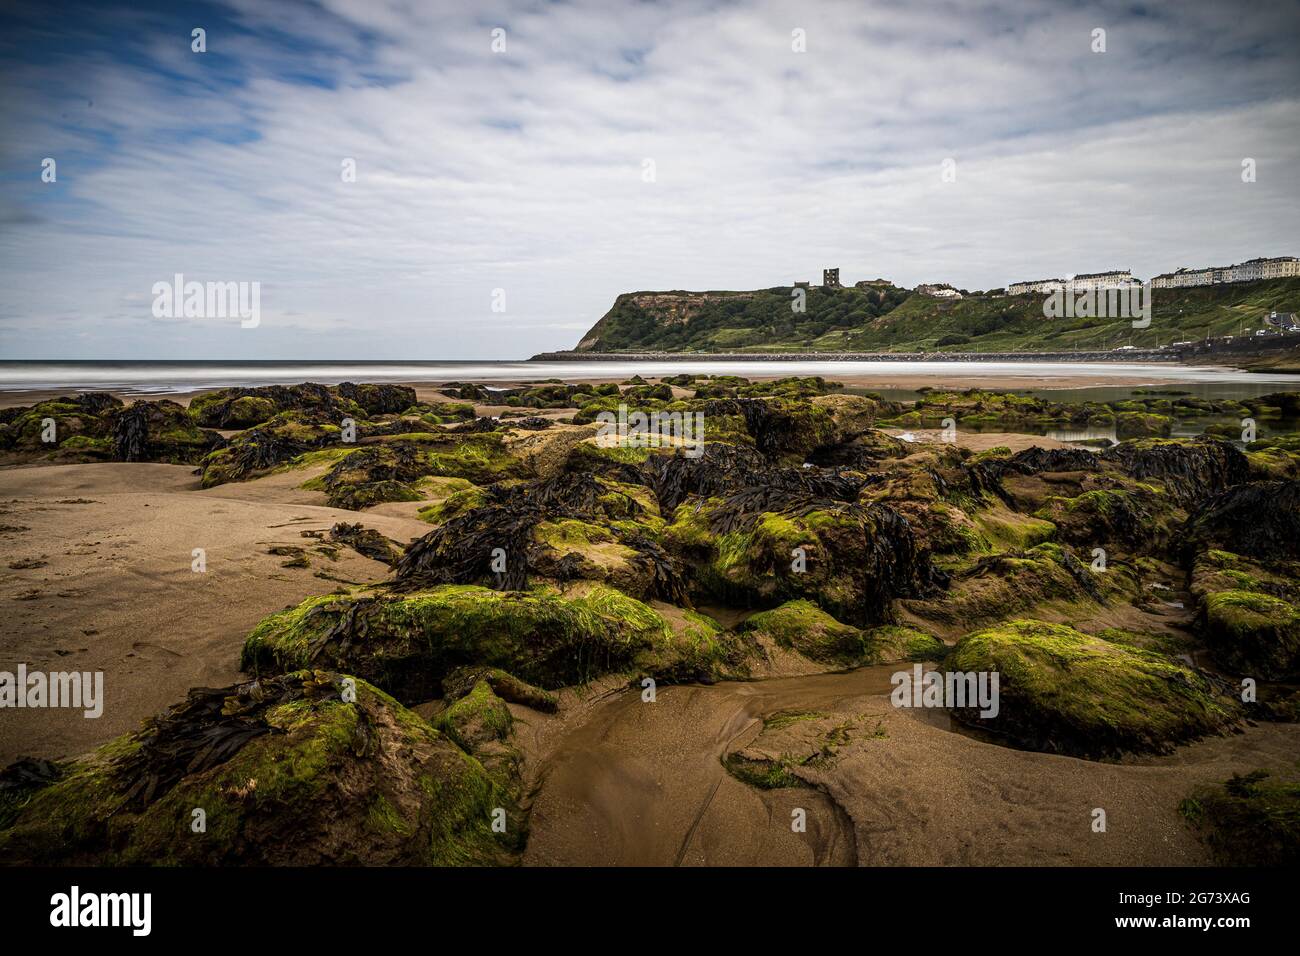 Una vista di rocce mussose in una baia con il Castello di Scarborough sullo sfondo Foto Stock